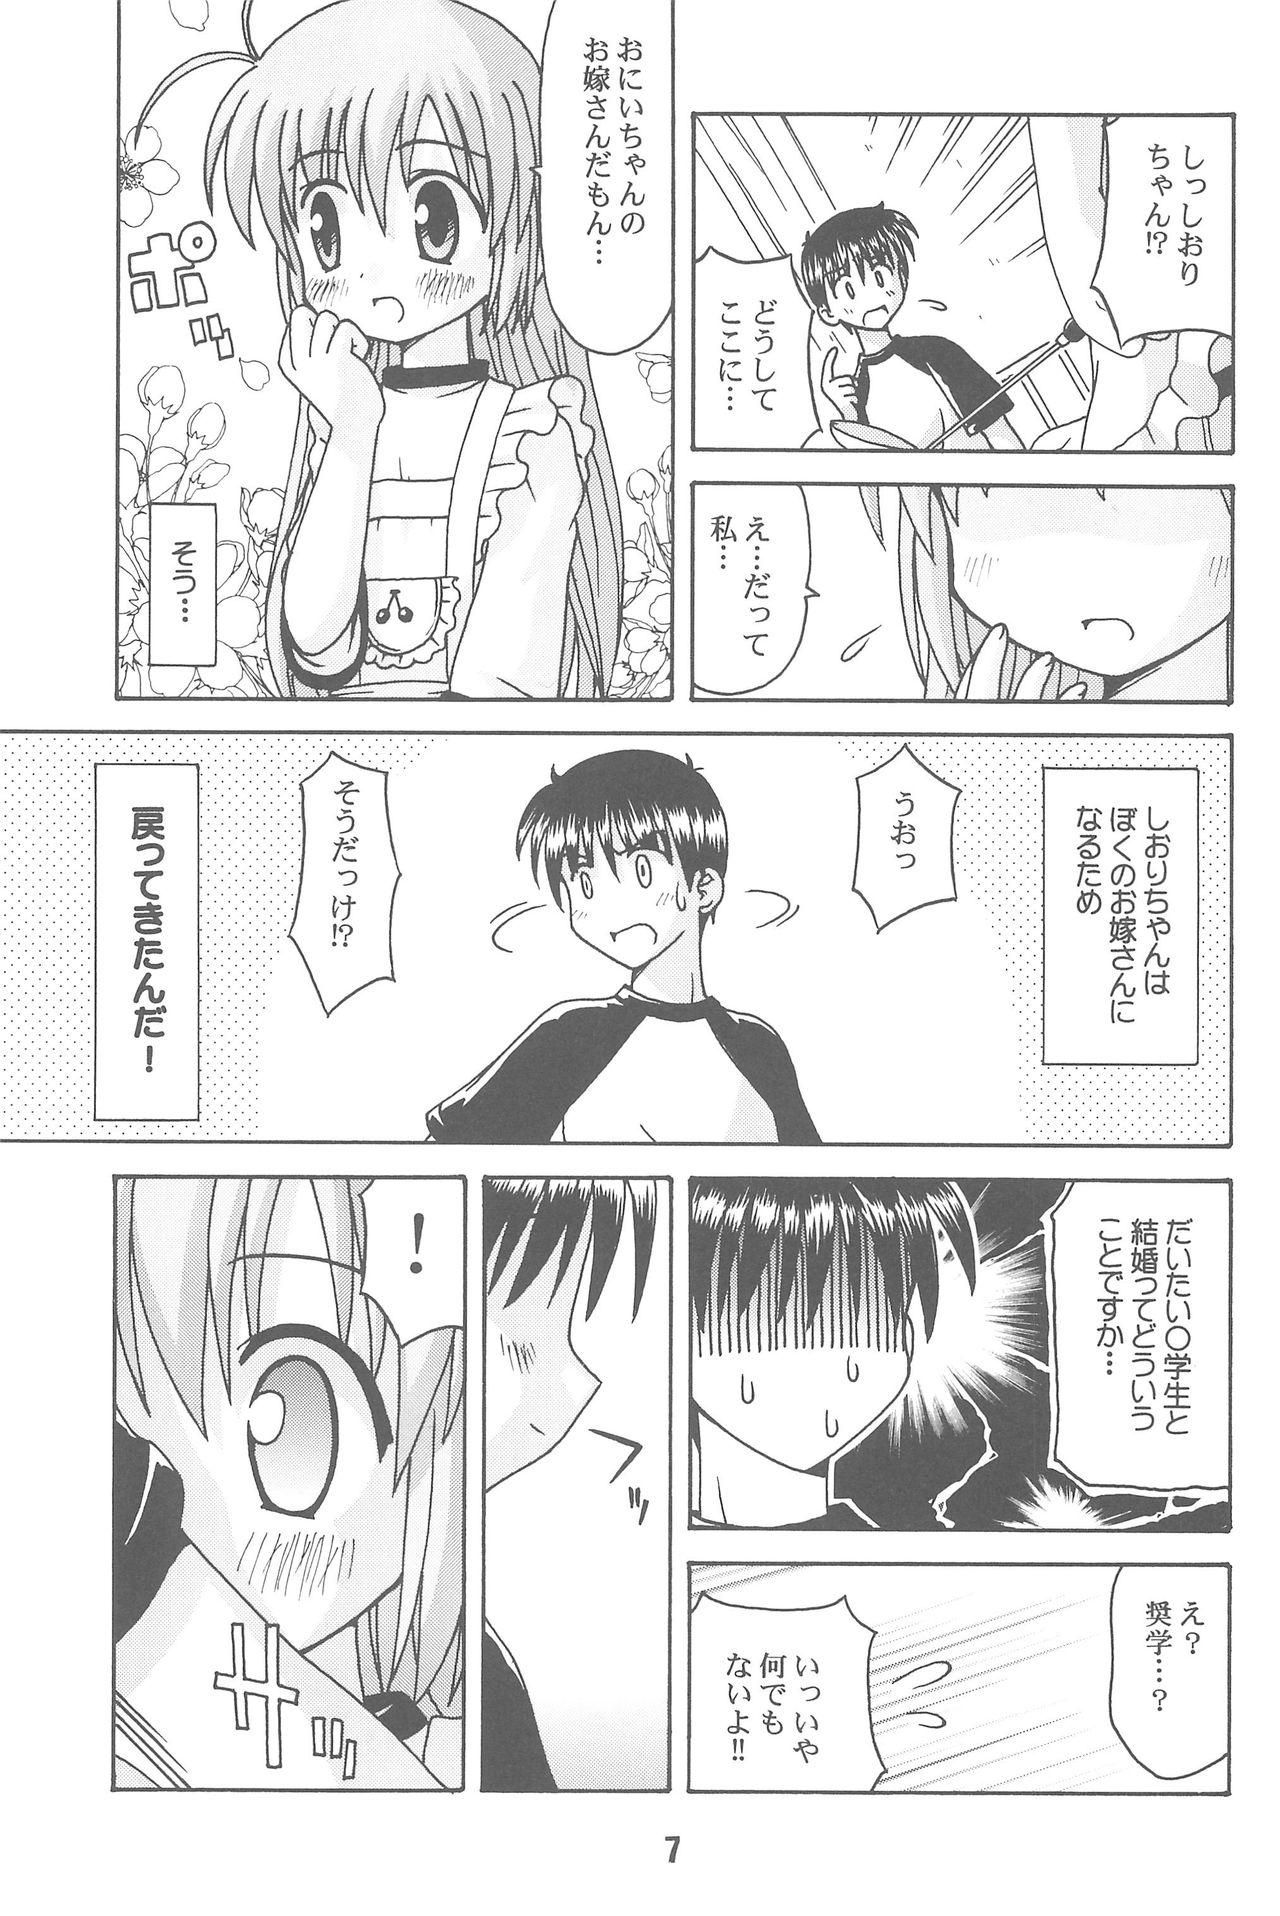 Twinkstudios Hajishino - Hajimete no orusuban Latin - Page 7